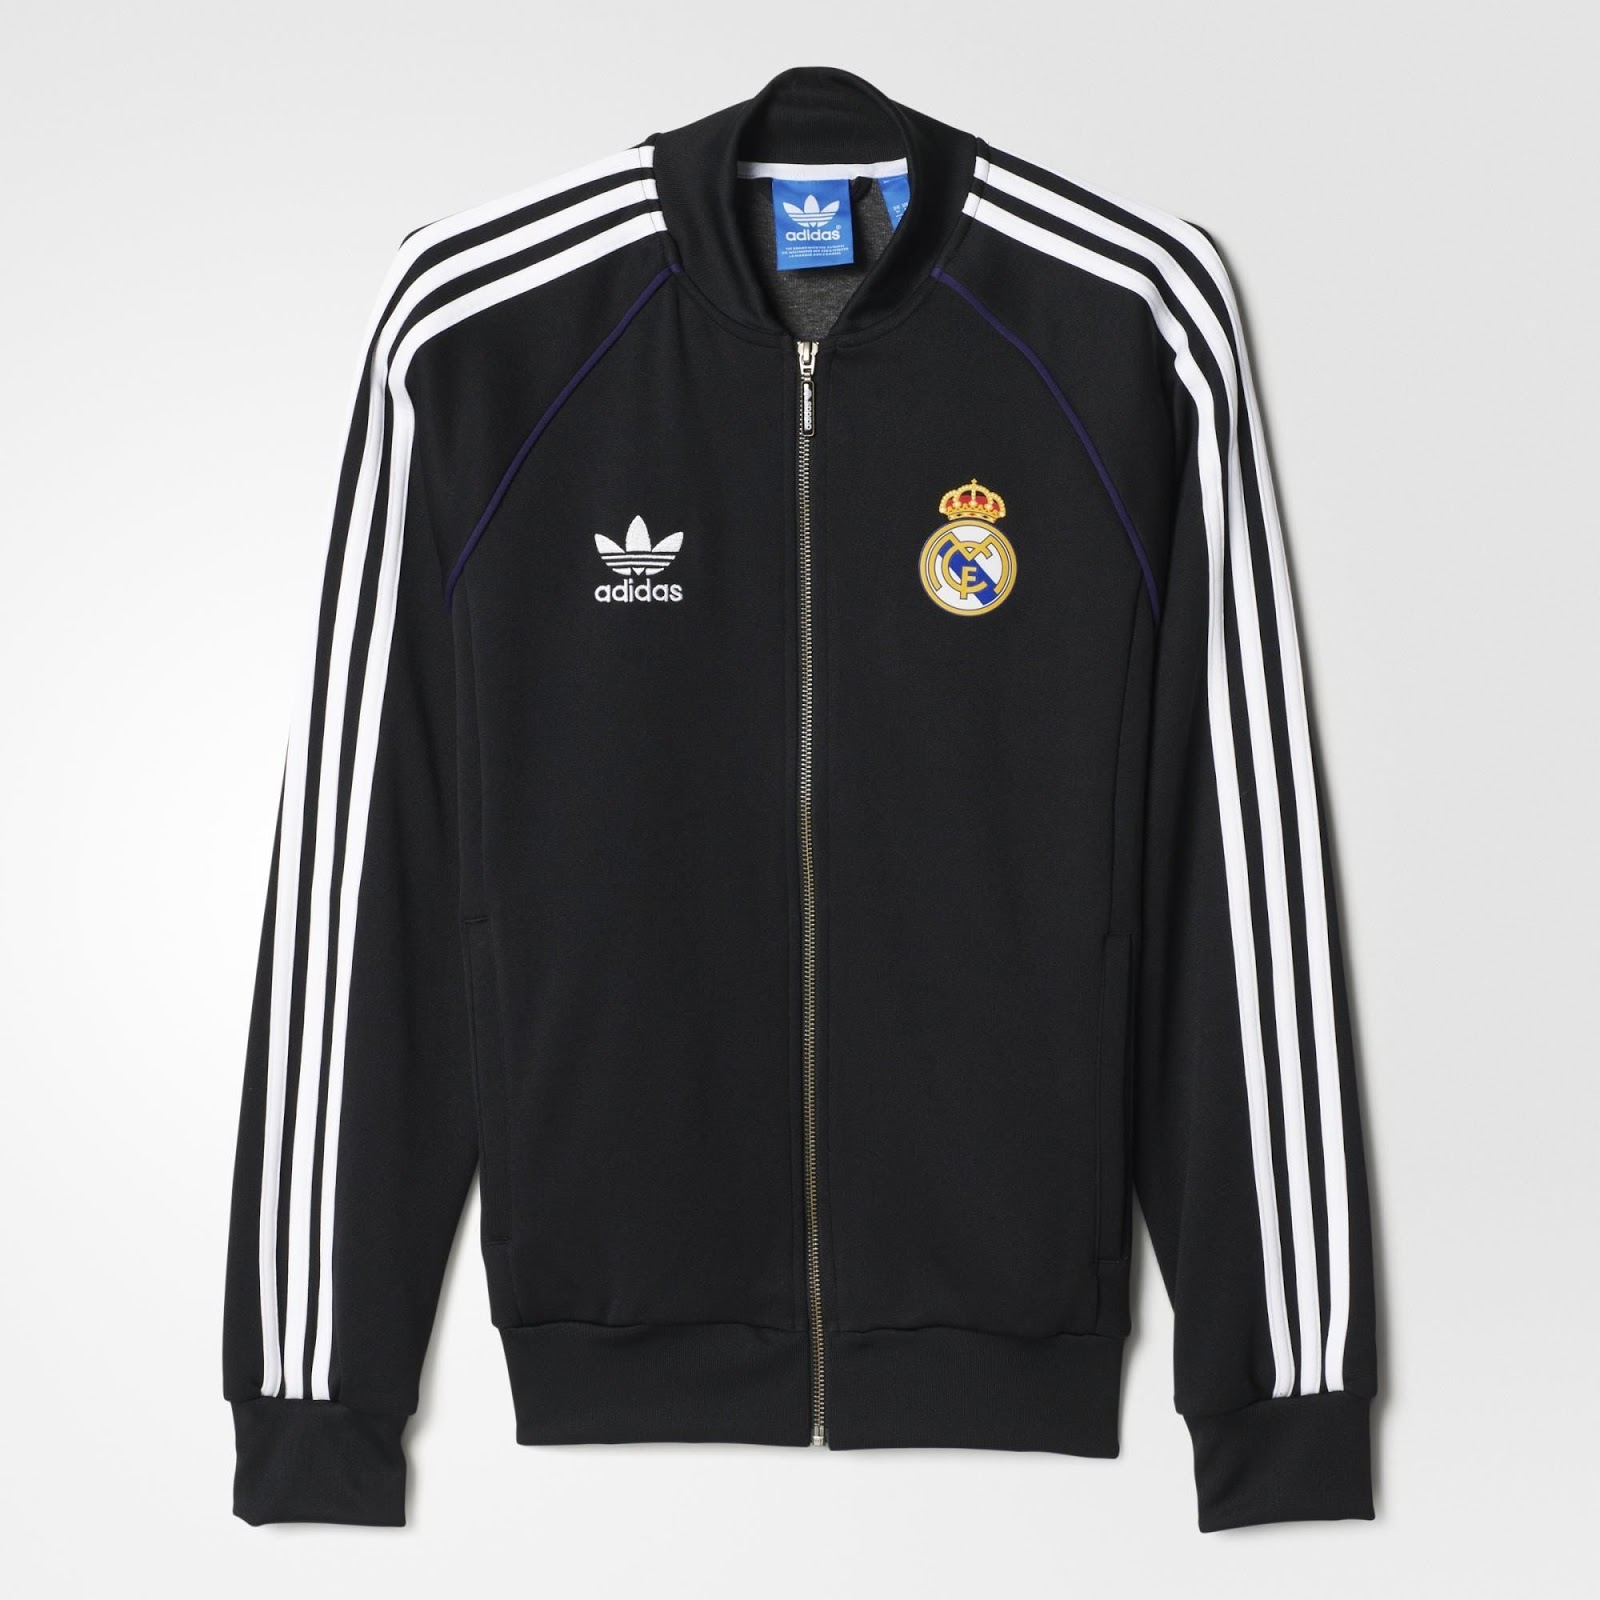 Адидас реал. Adidas Originals real Madrid track Jacket. Adidas Originals real Madrid. Олимпийка Реал Мадрид adidas Originals. Adidas real Madrid олимпийка.